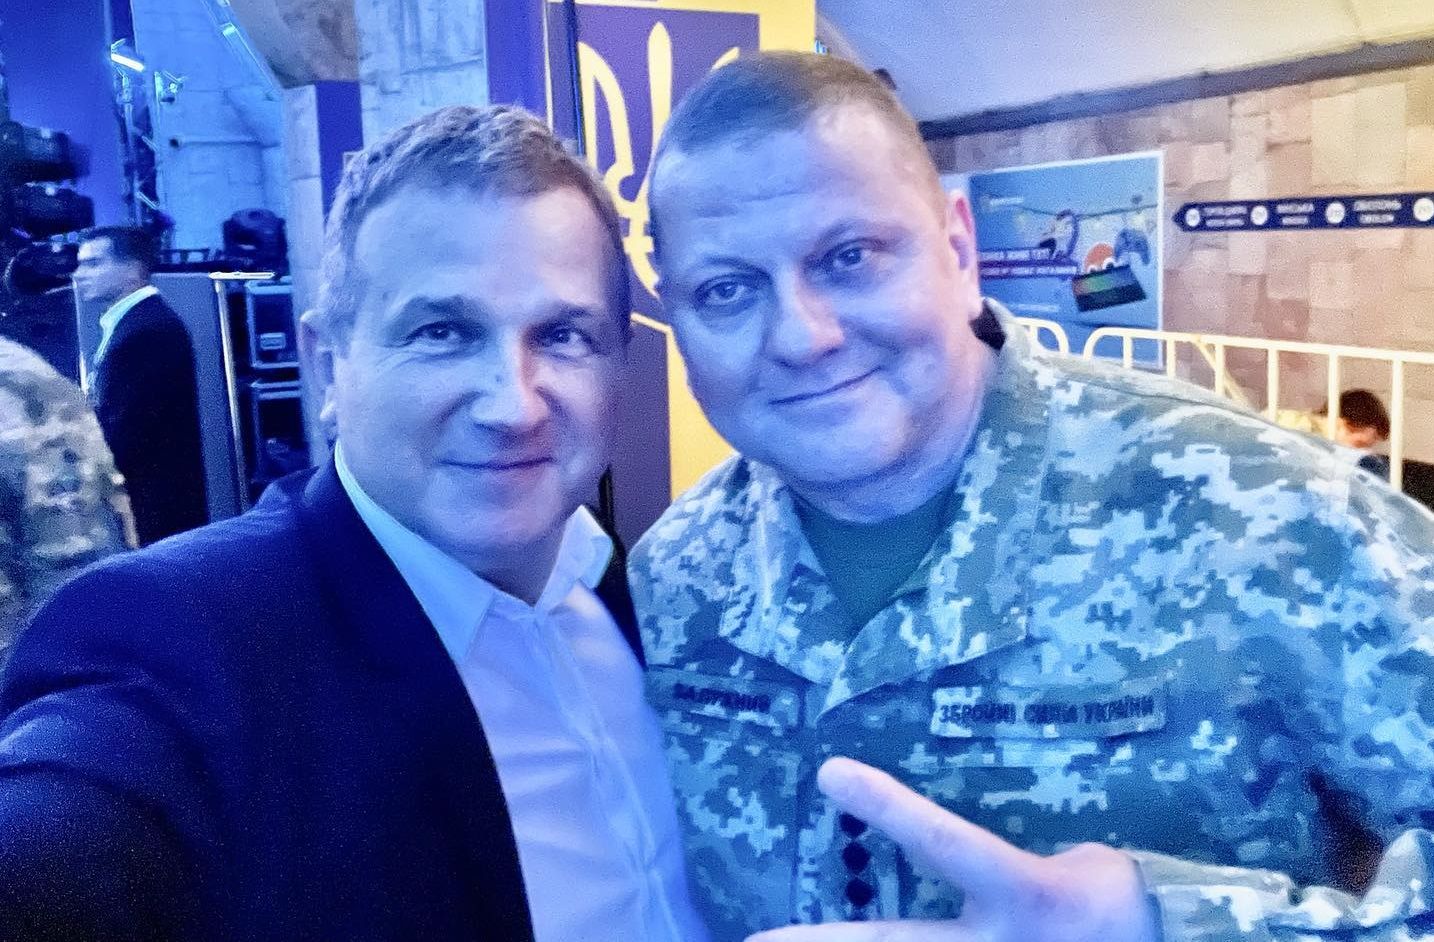 Горбунов готов отдать свой военный орден За заслуги – реакция украинцев